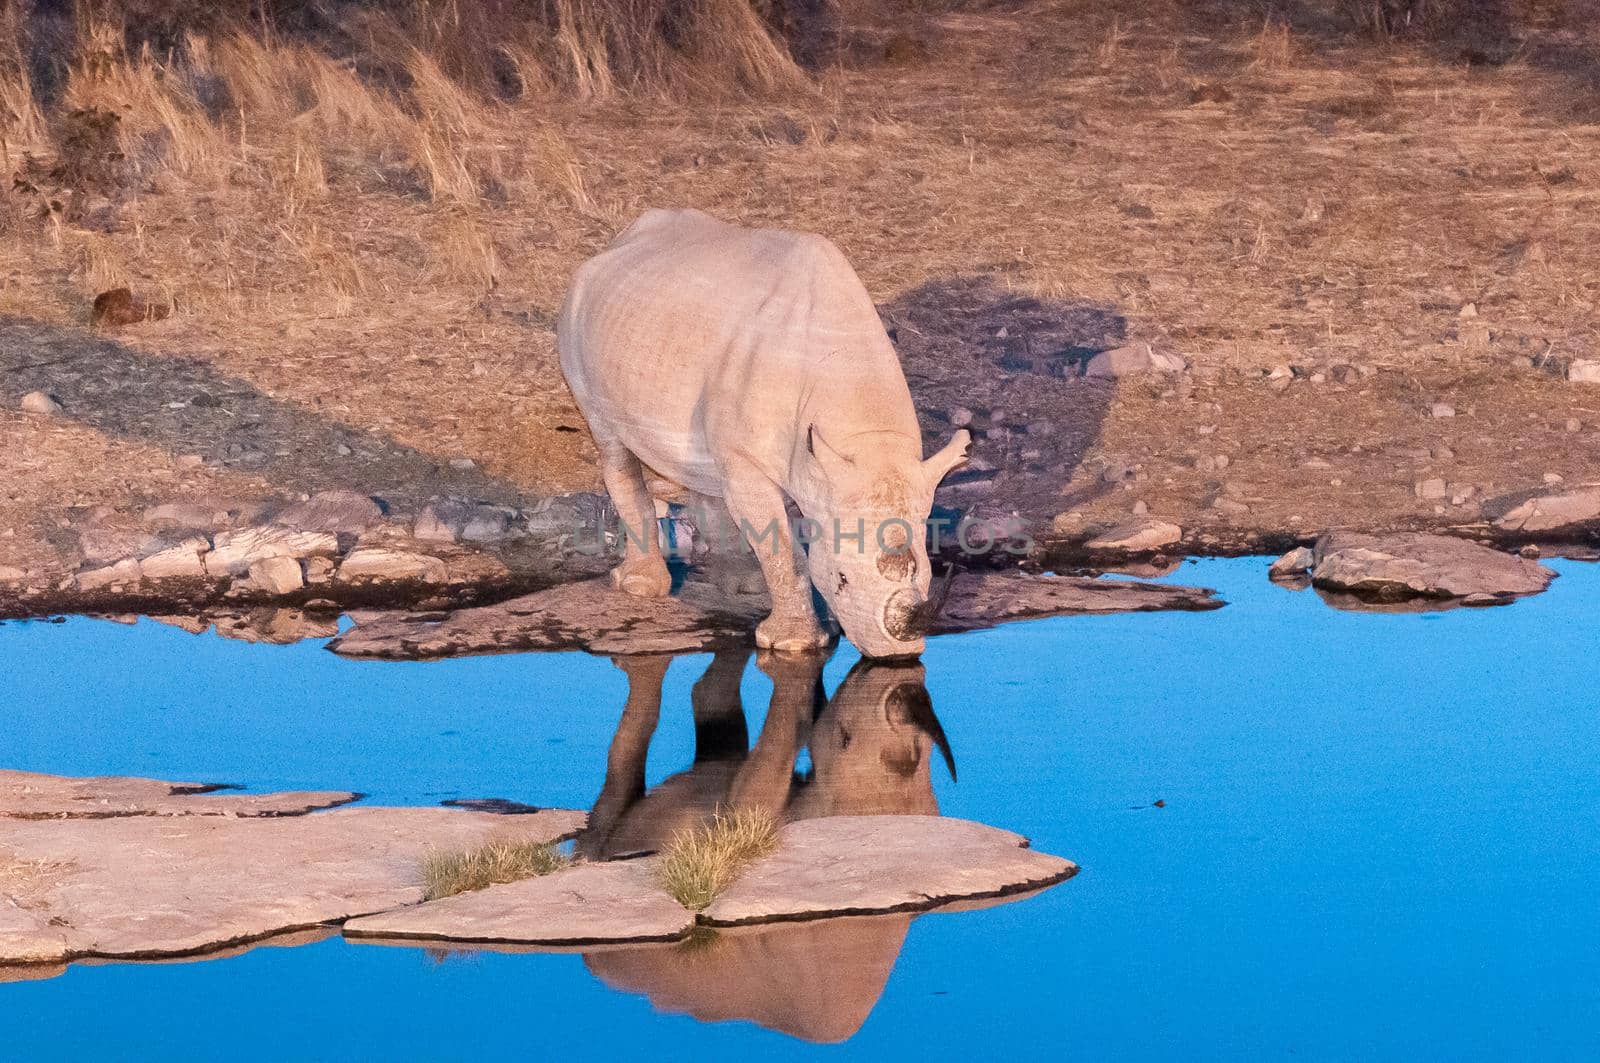 Black rhinoceros drinking water at an artificially lit waterhole by dpreezg